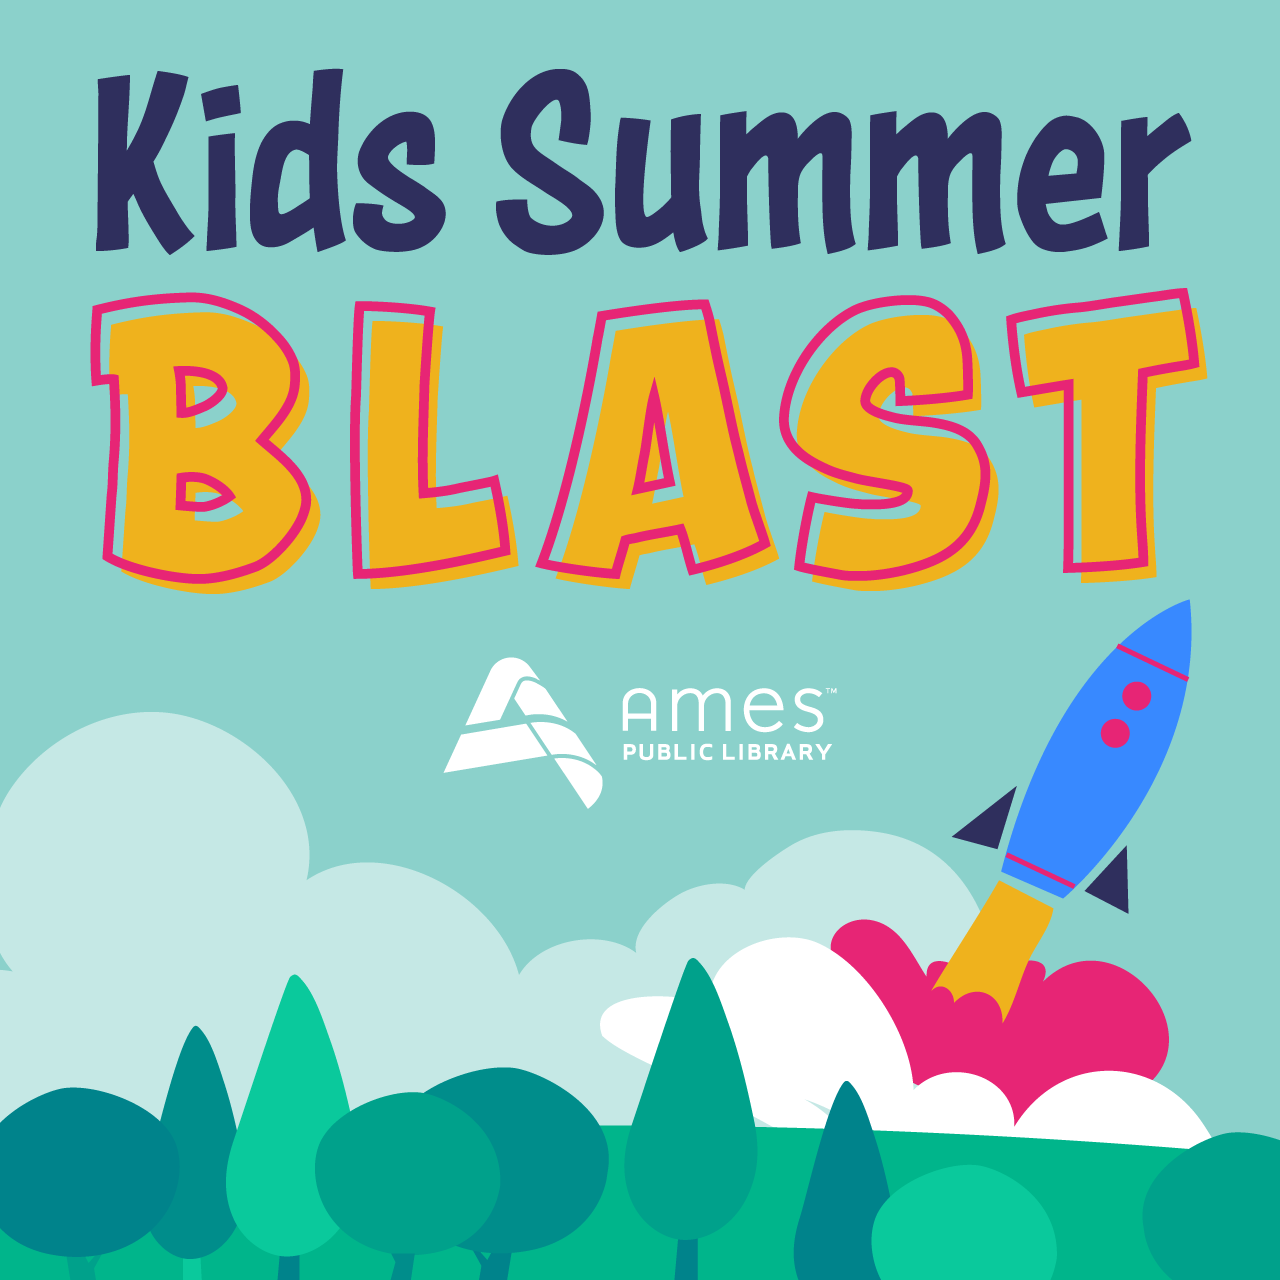 Kids Summer Blast